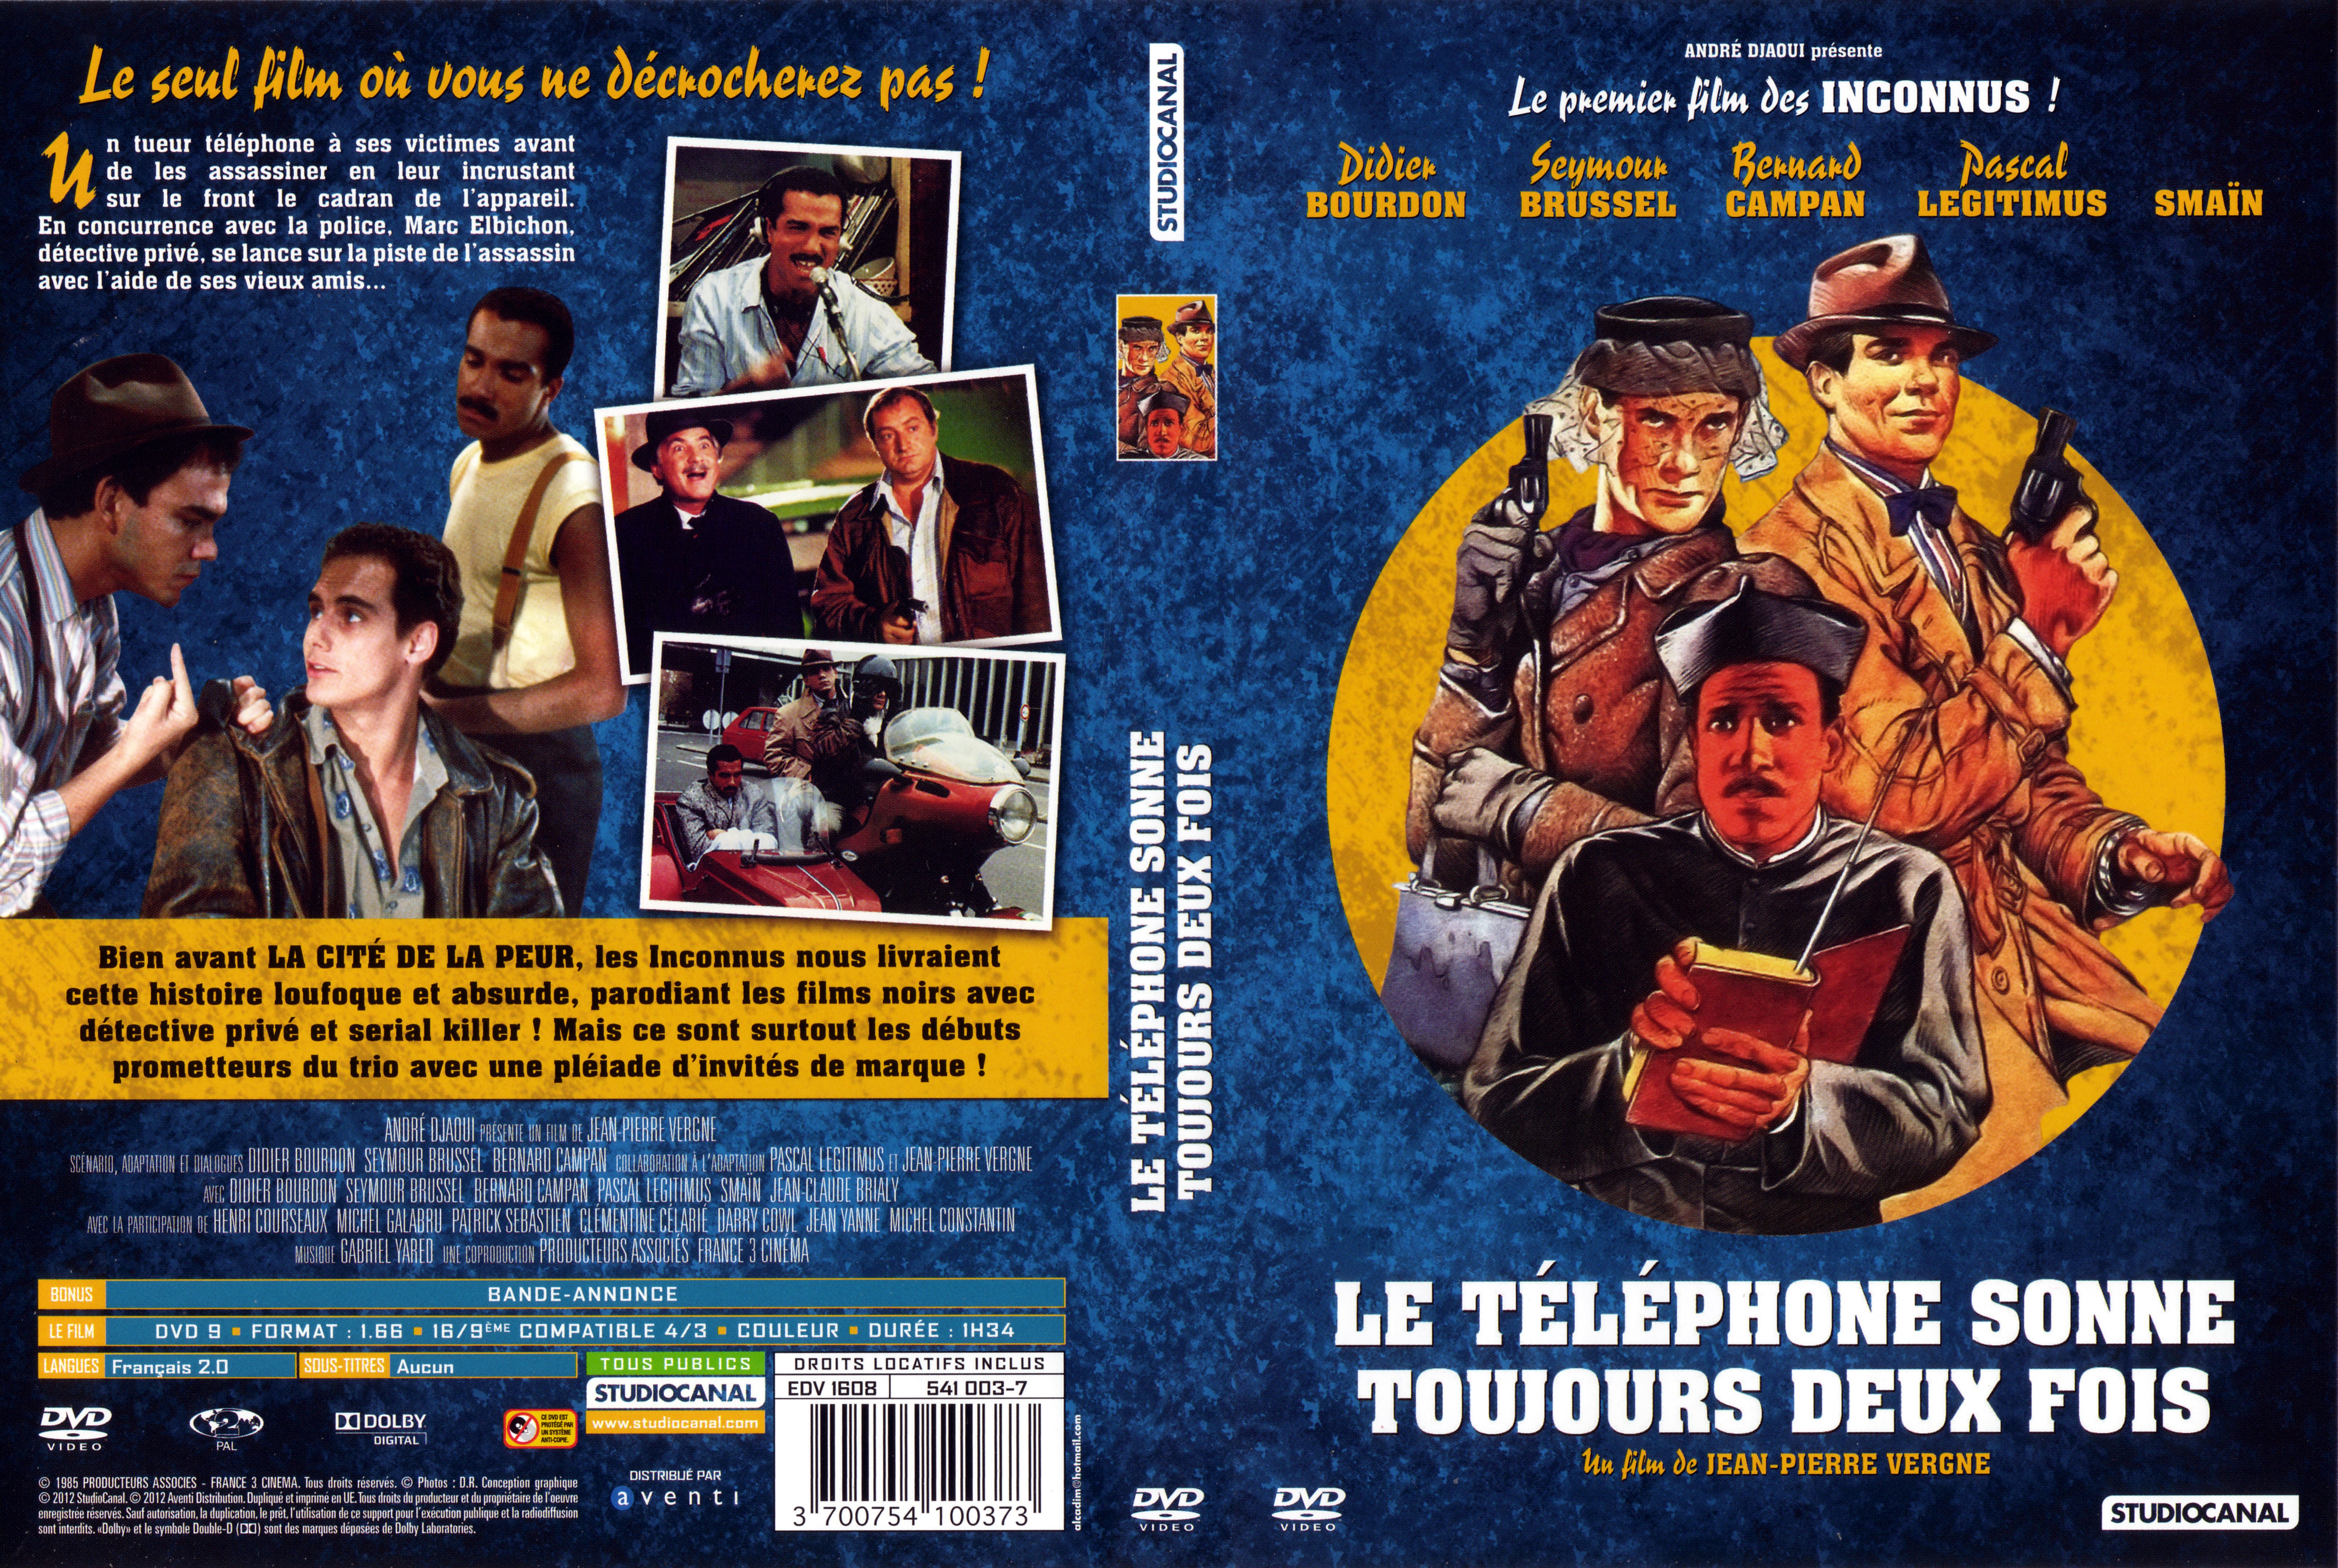 Jaquette DVD de Le téléphone sonne toujours deux fois v2 - Cinéma